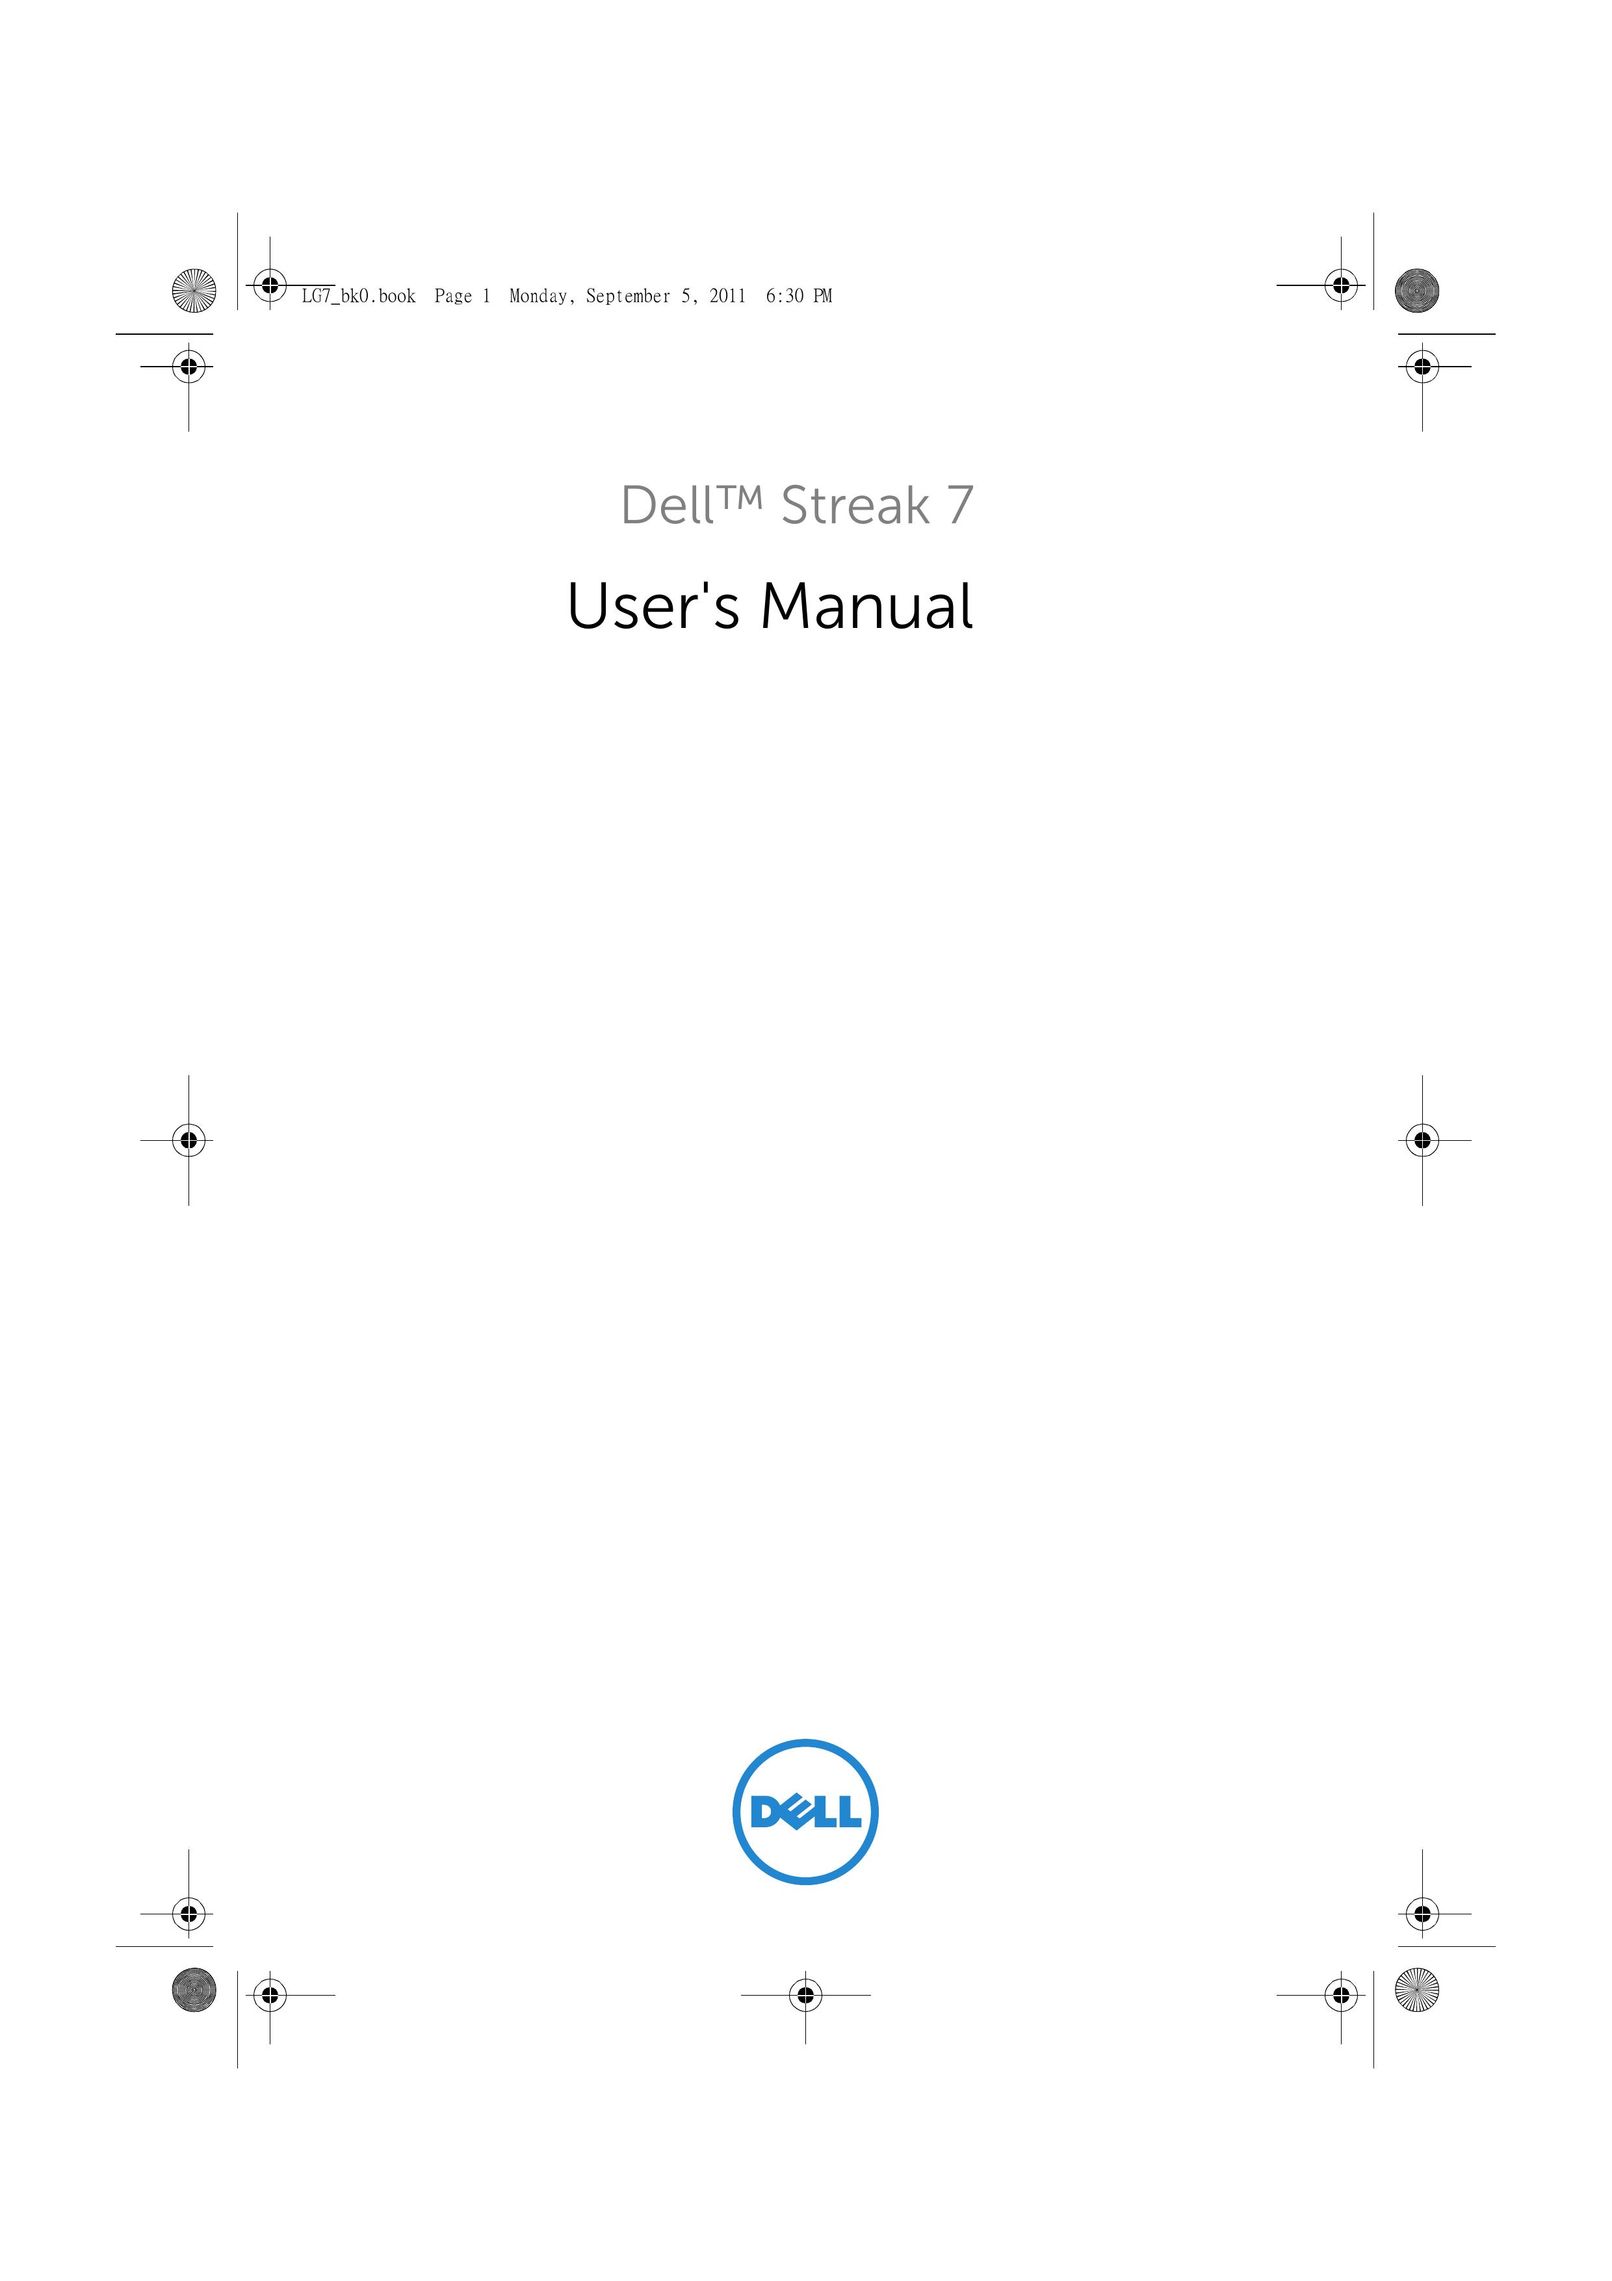 Dell LG7_bk0 Graphics Tablet User Manual